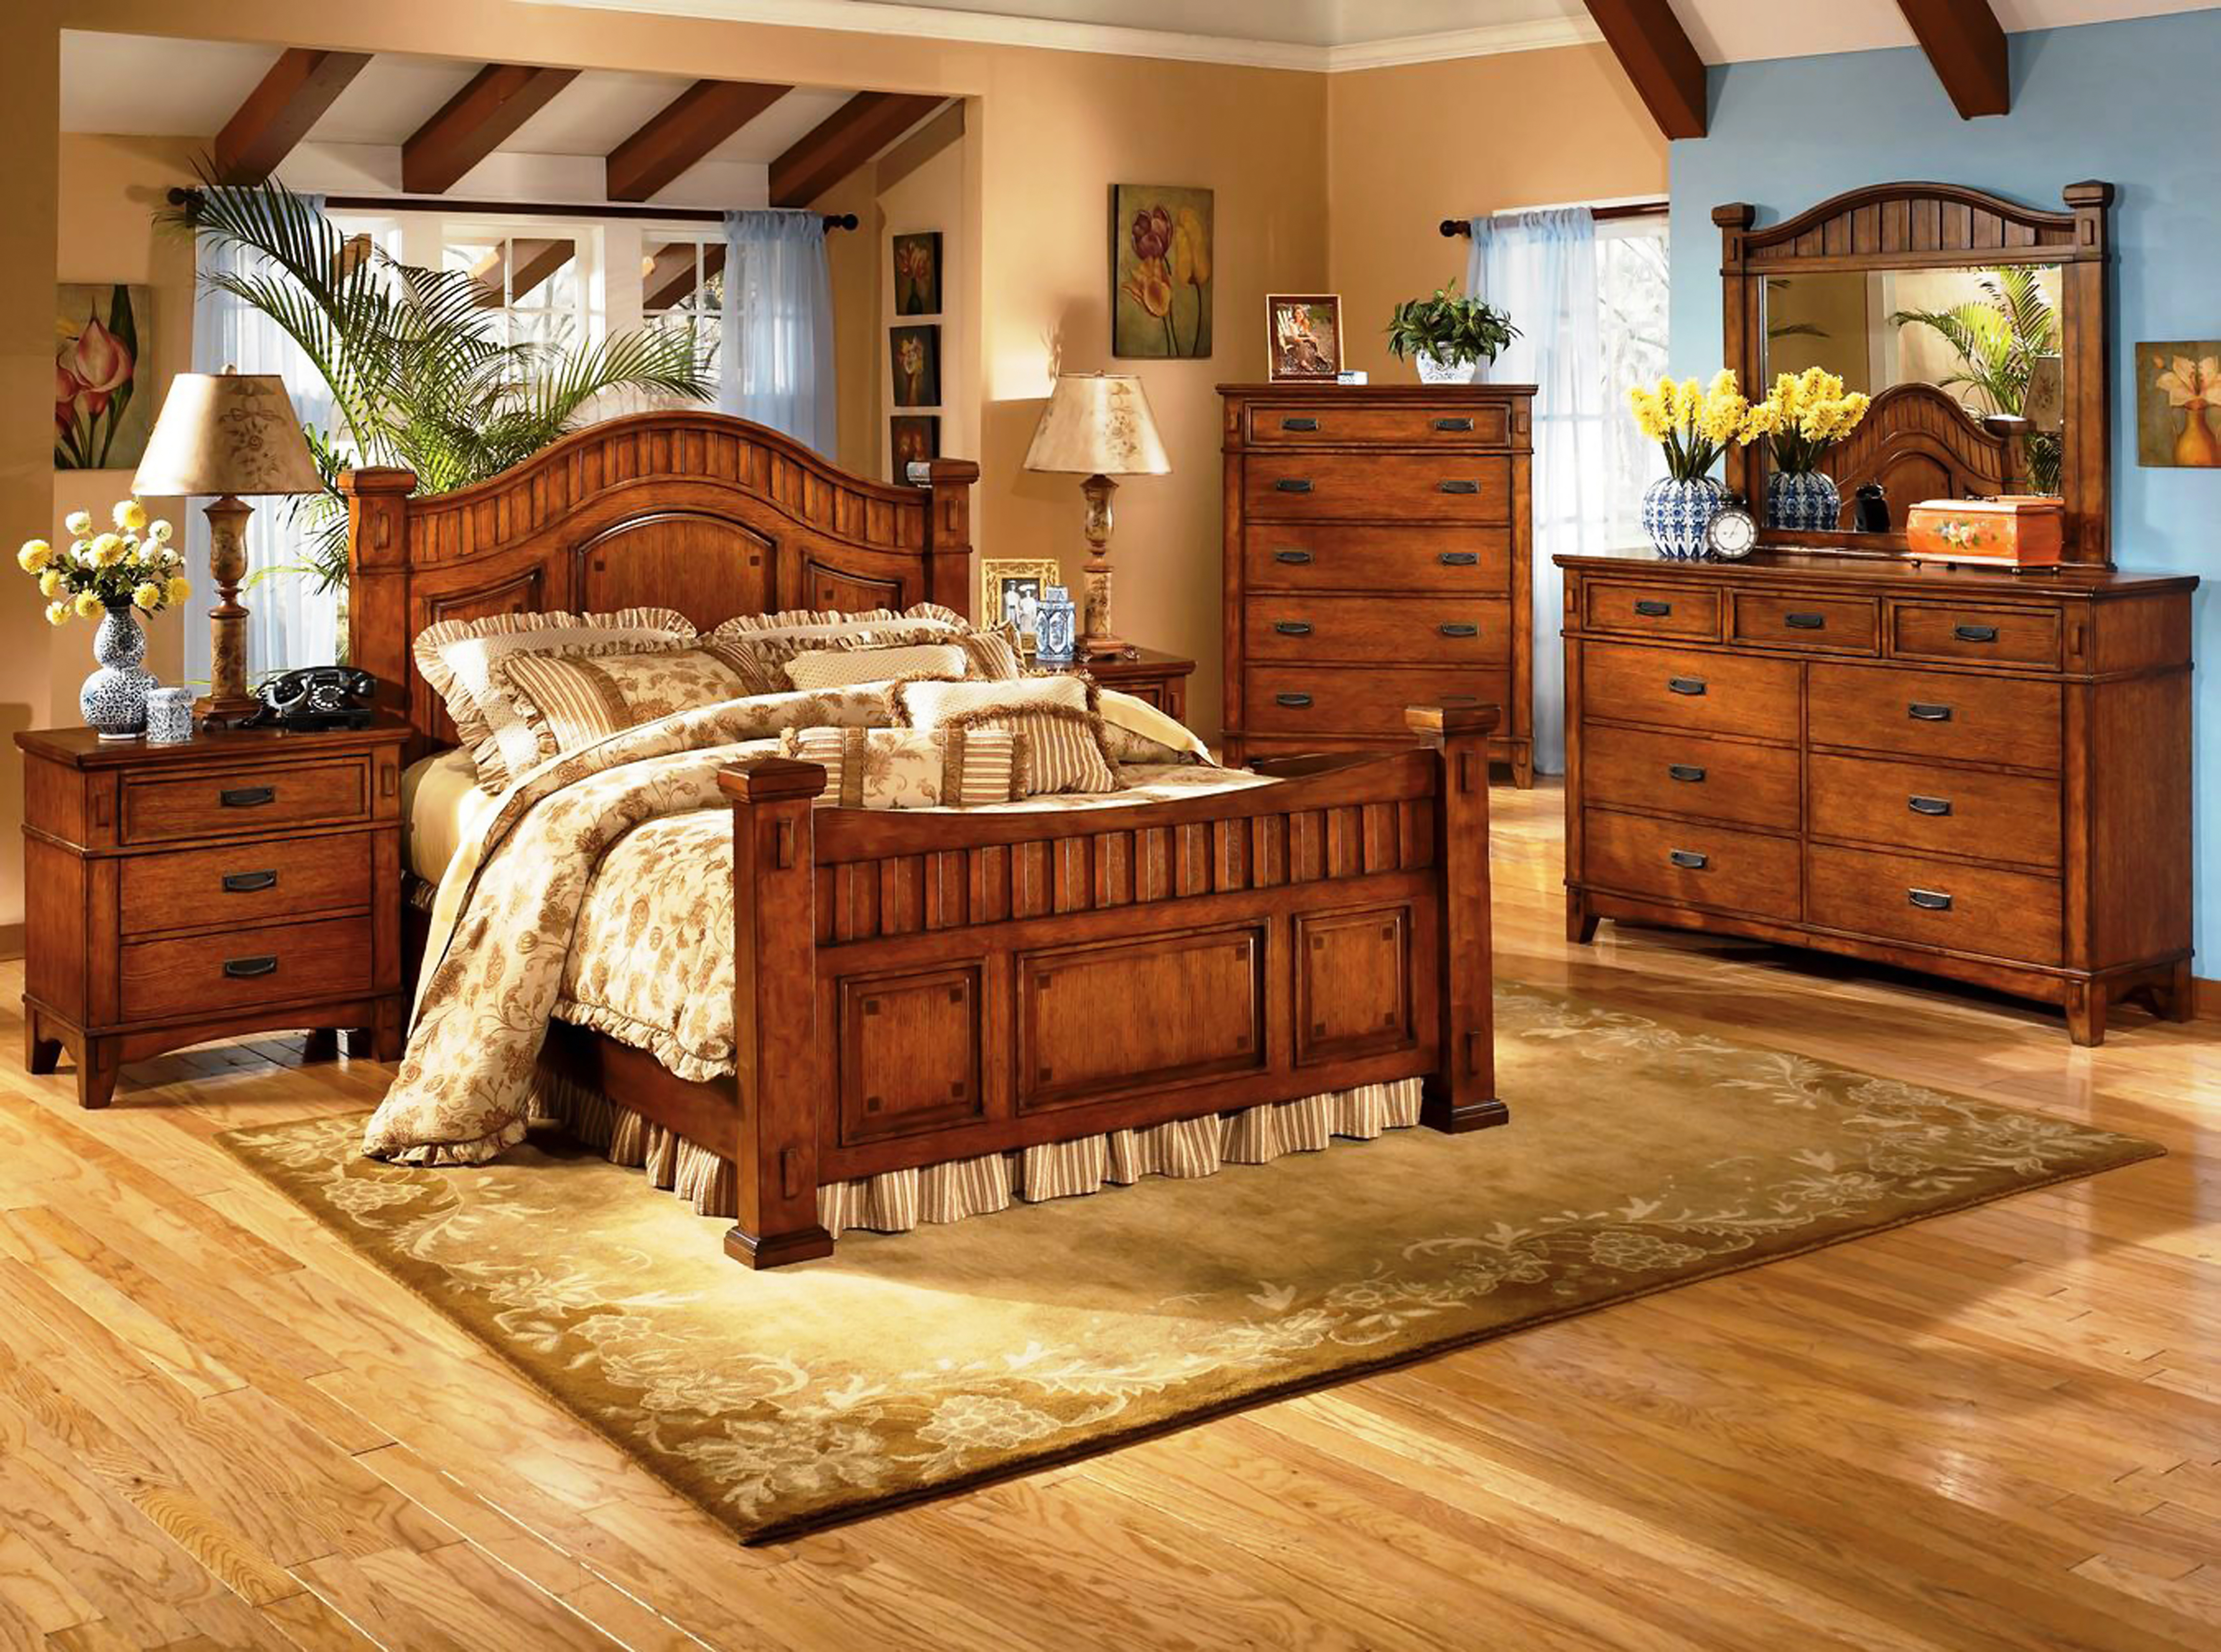 Спальня мебель дерево. Спальня в стиле Кантри. Комната с деревянной мебелью. Стиль Кантри в интерьере спальни. Кровать в стиле Кантри.